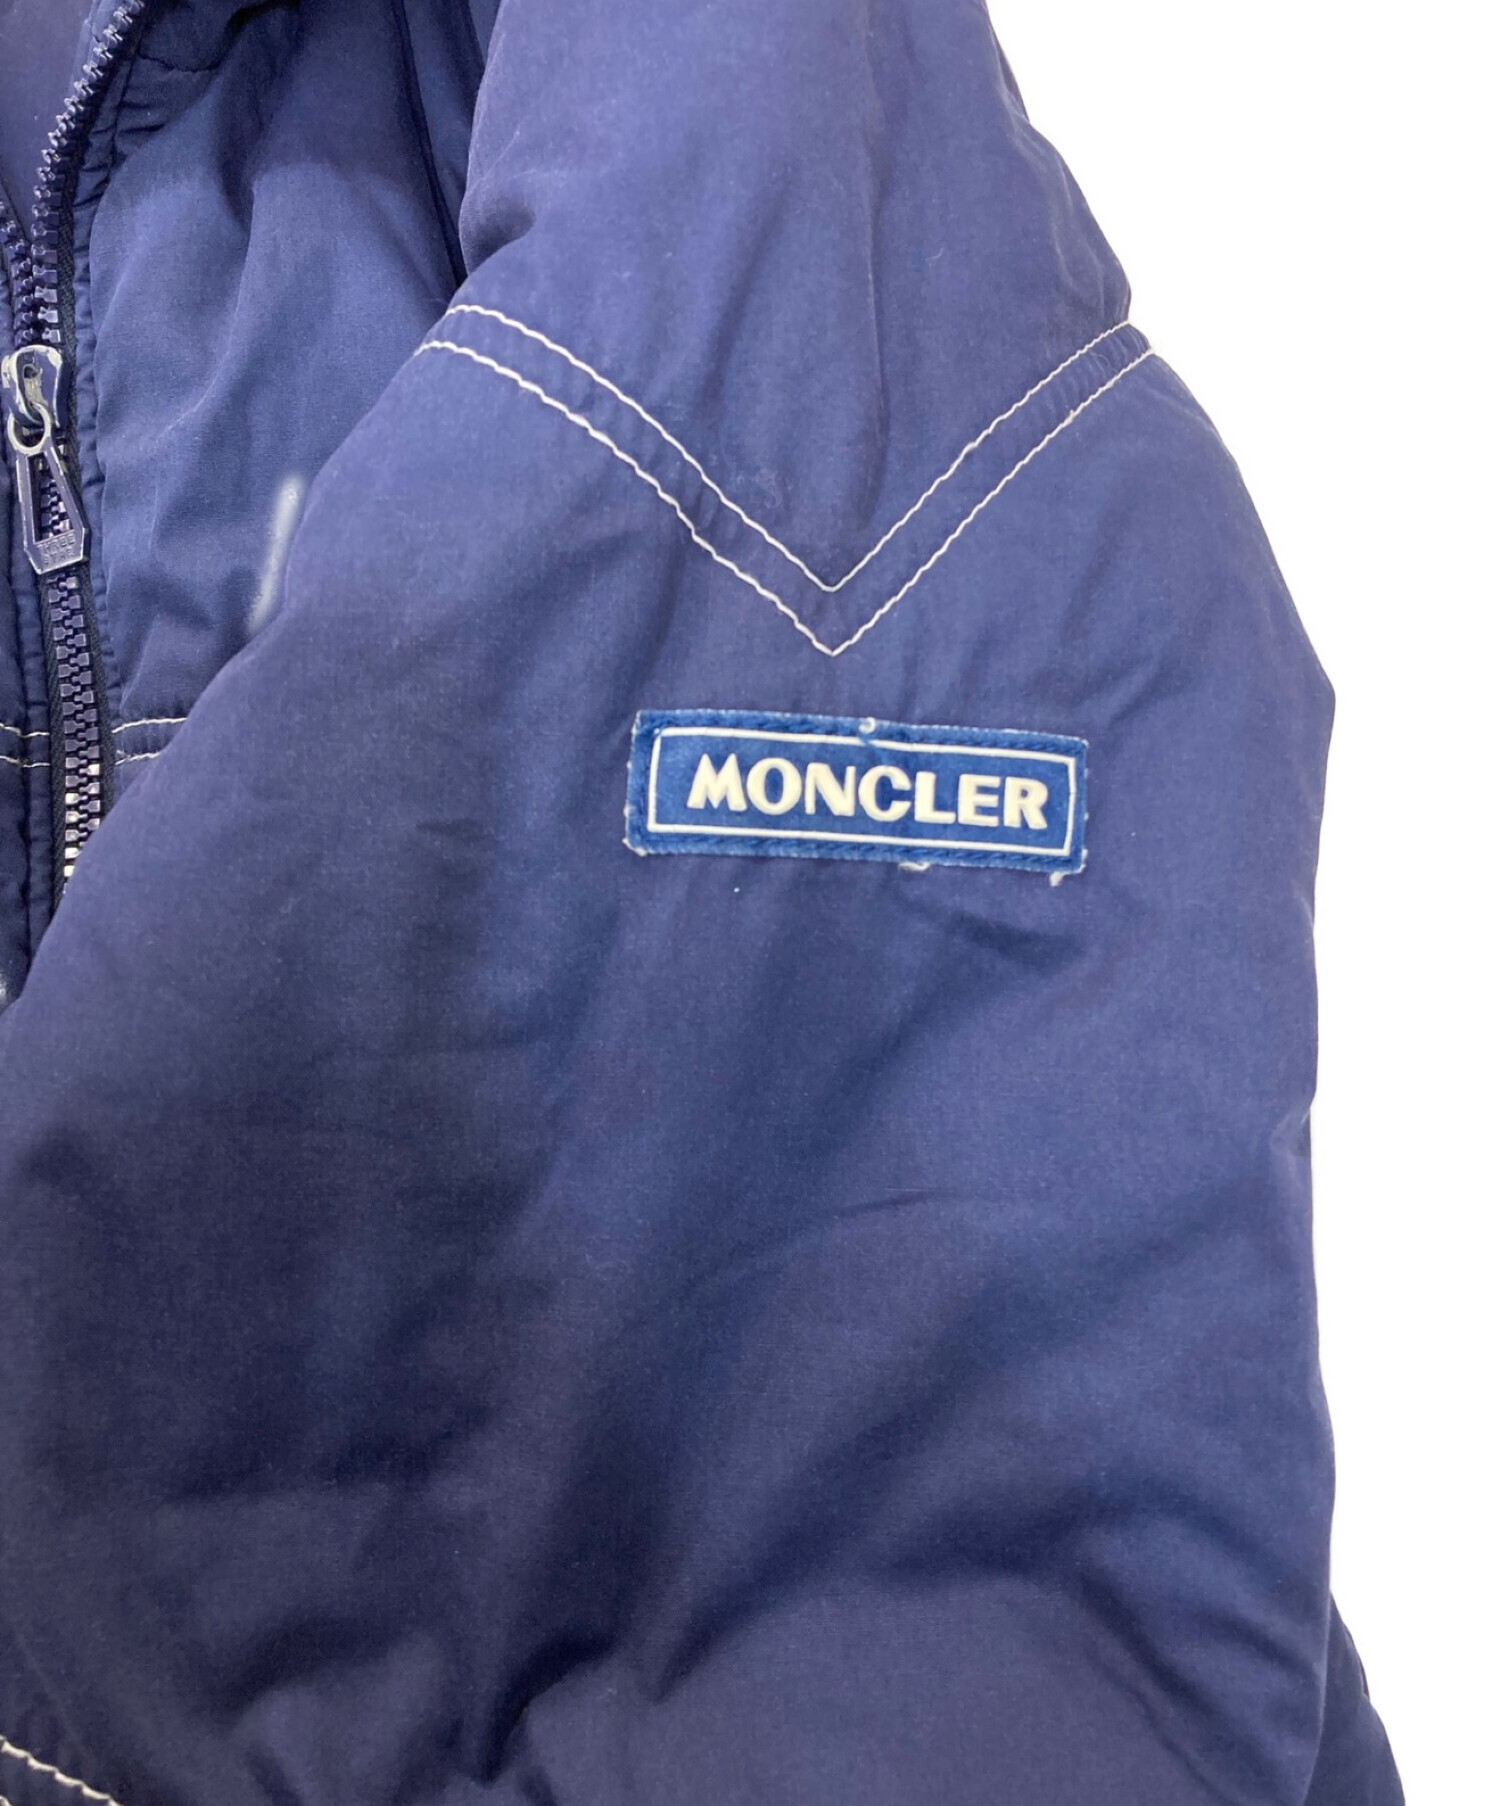 MONCLER (モンクレール) リバーシブル中綿ジャケット アシックス期 ネイビー サイズ:L